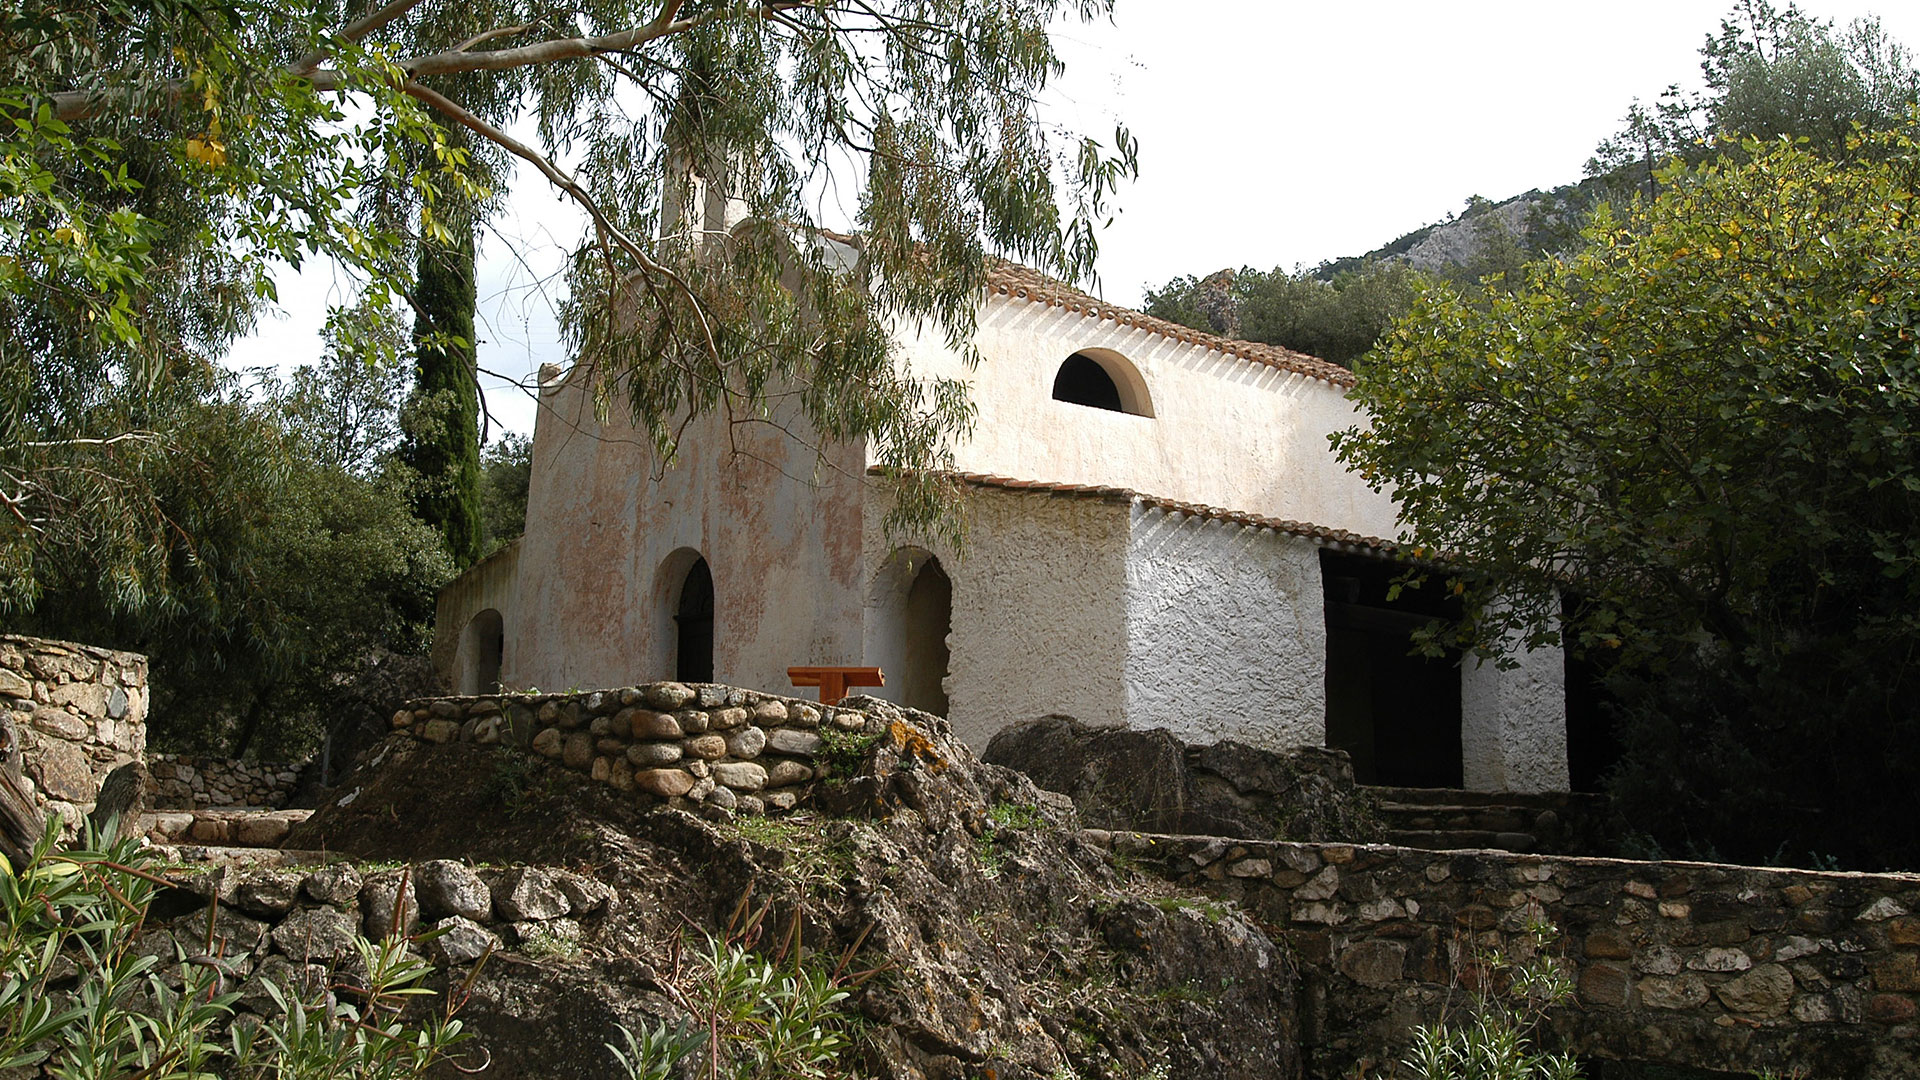 Oliena sorgente su Gologone chiesa della Pietà